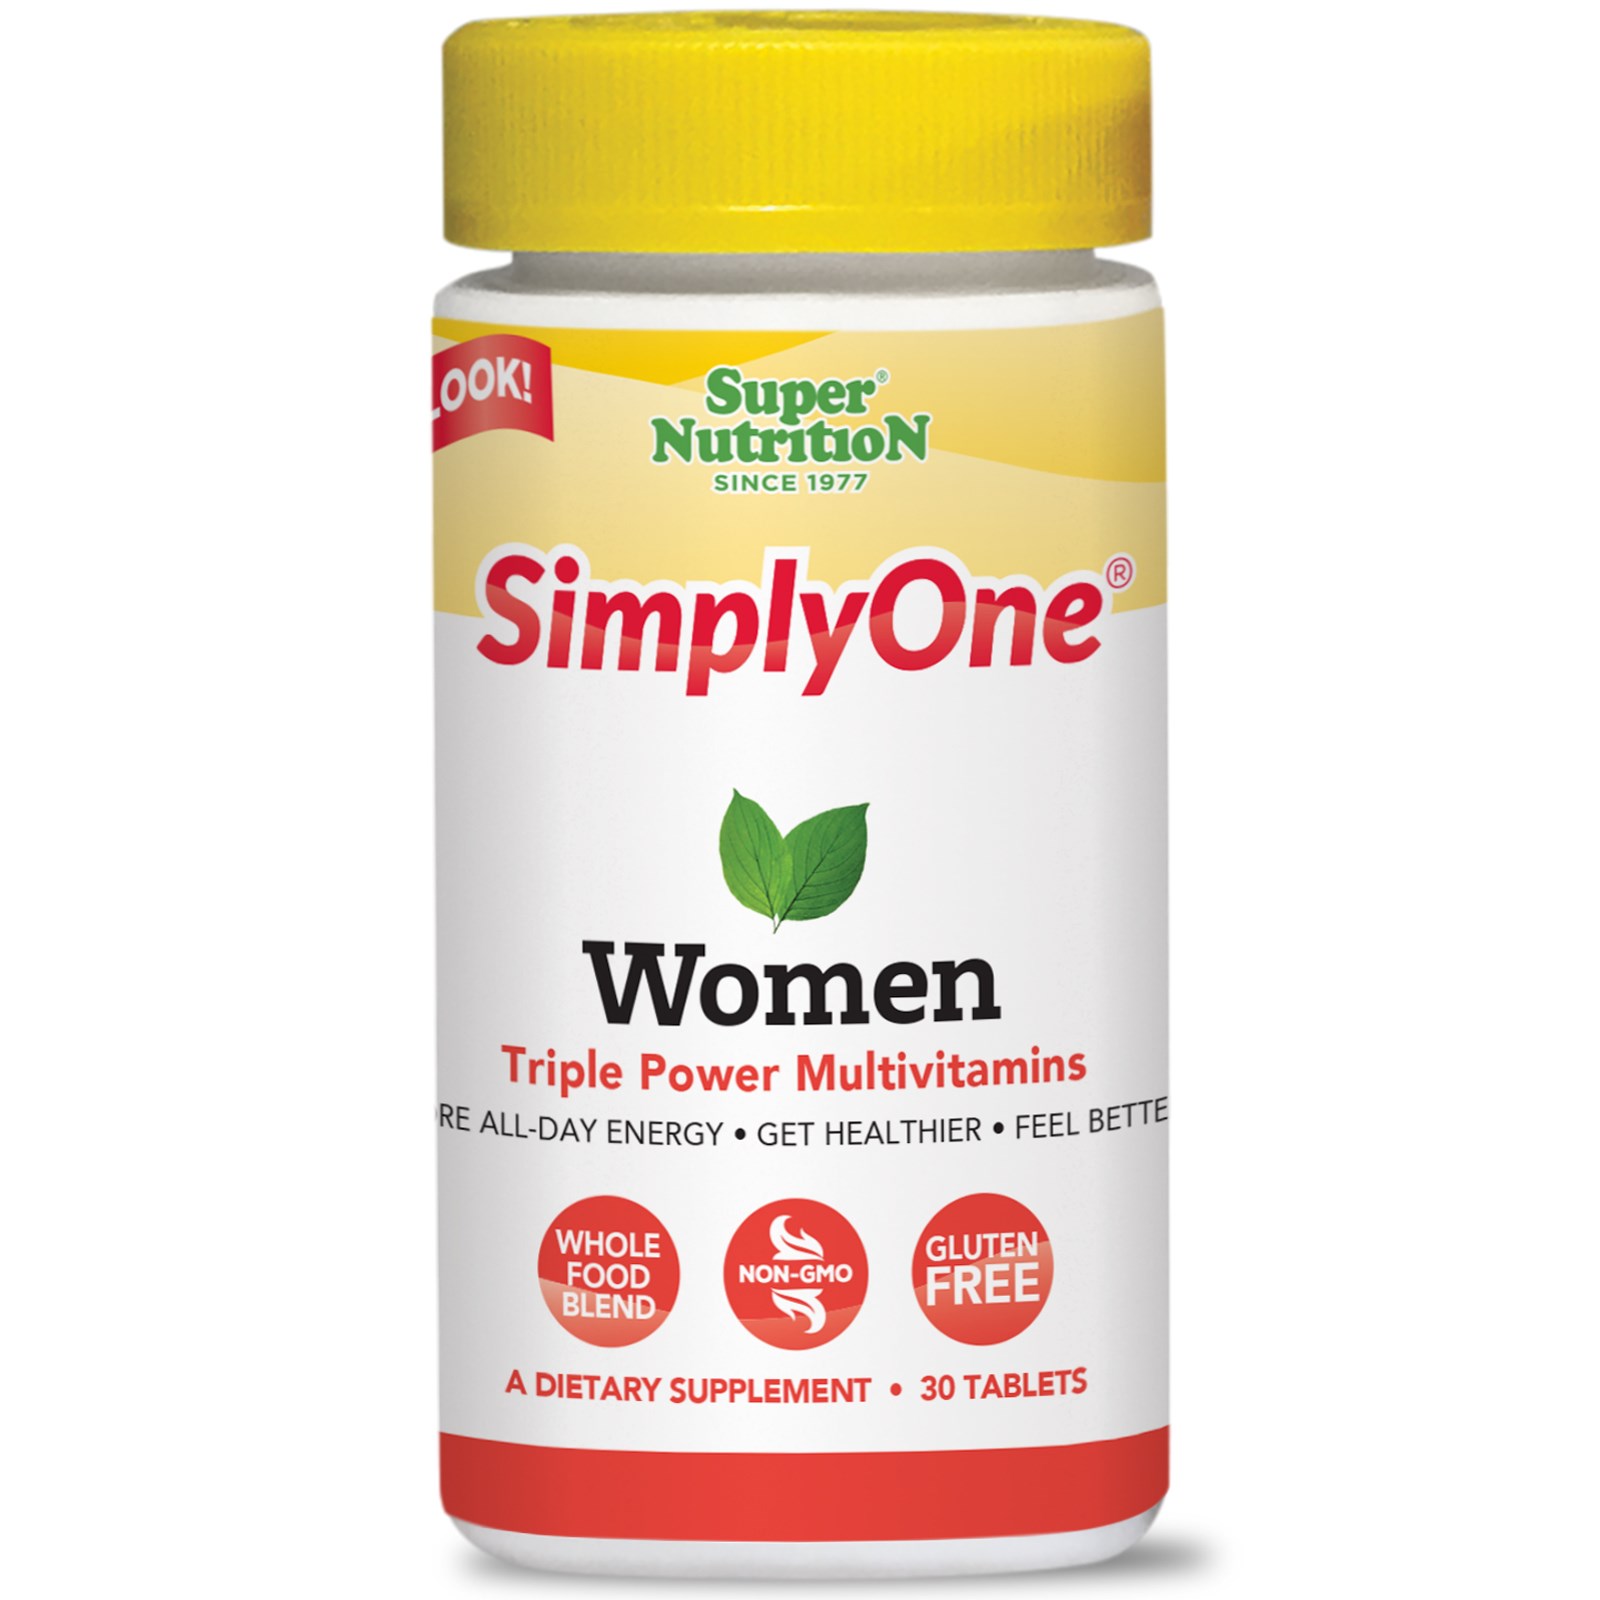 Super Nutrition, "SimplyOne", мультивитаминный комплекс тройной концентрации для женщин, 30 таблеток